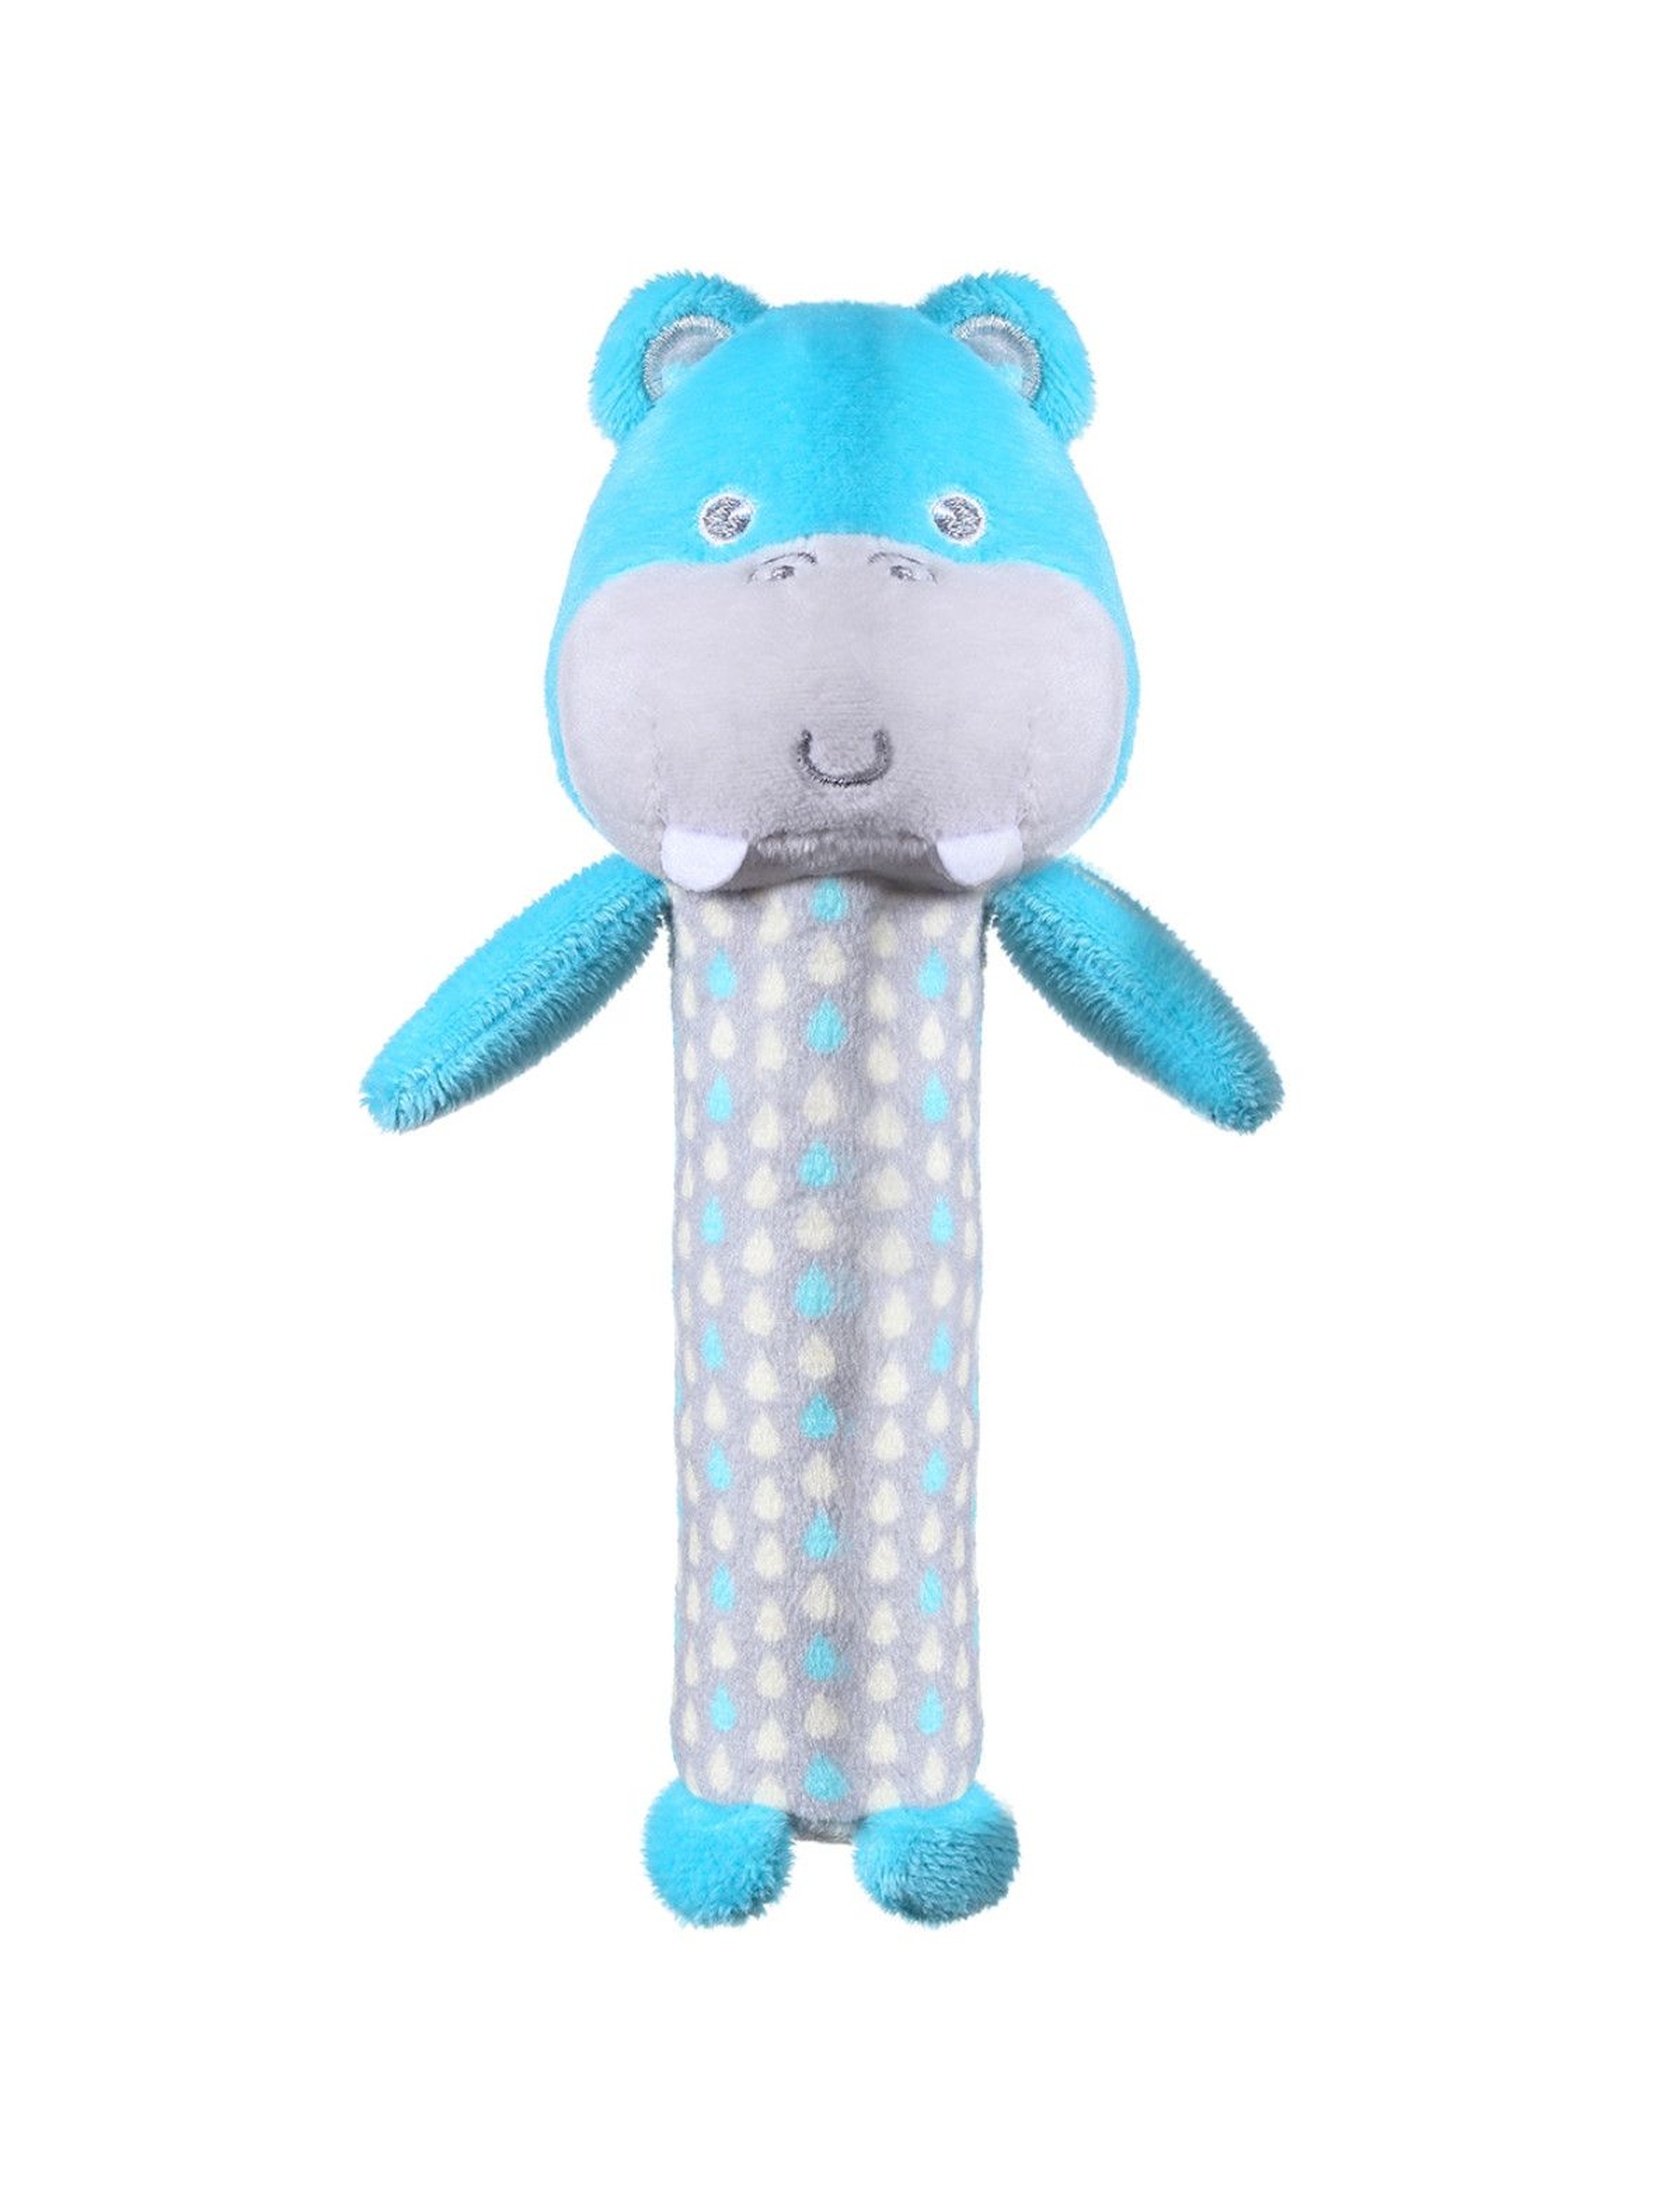 Piszczek Hipopotam Marcel- zabawka dla niemowlaka